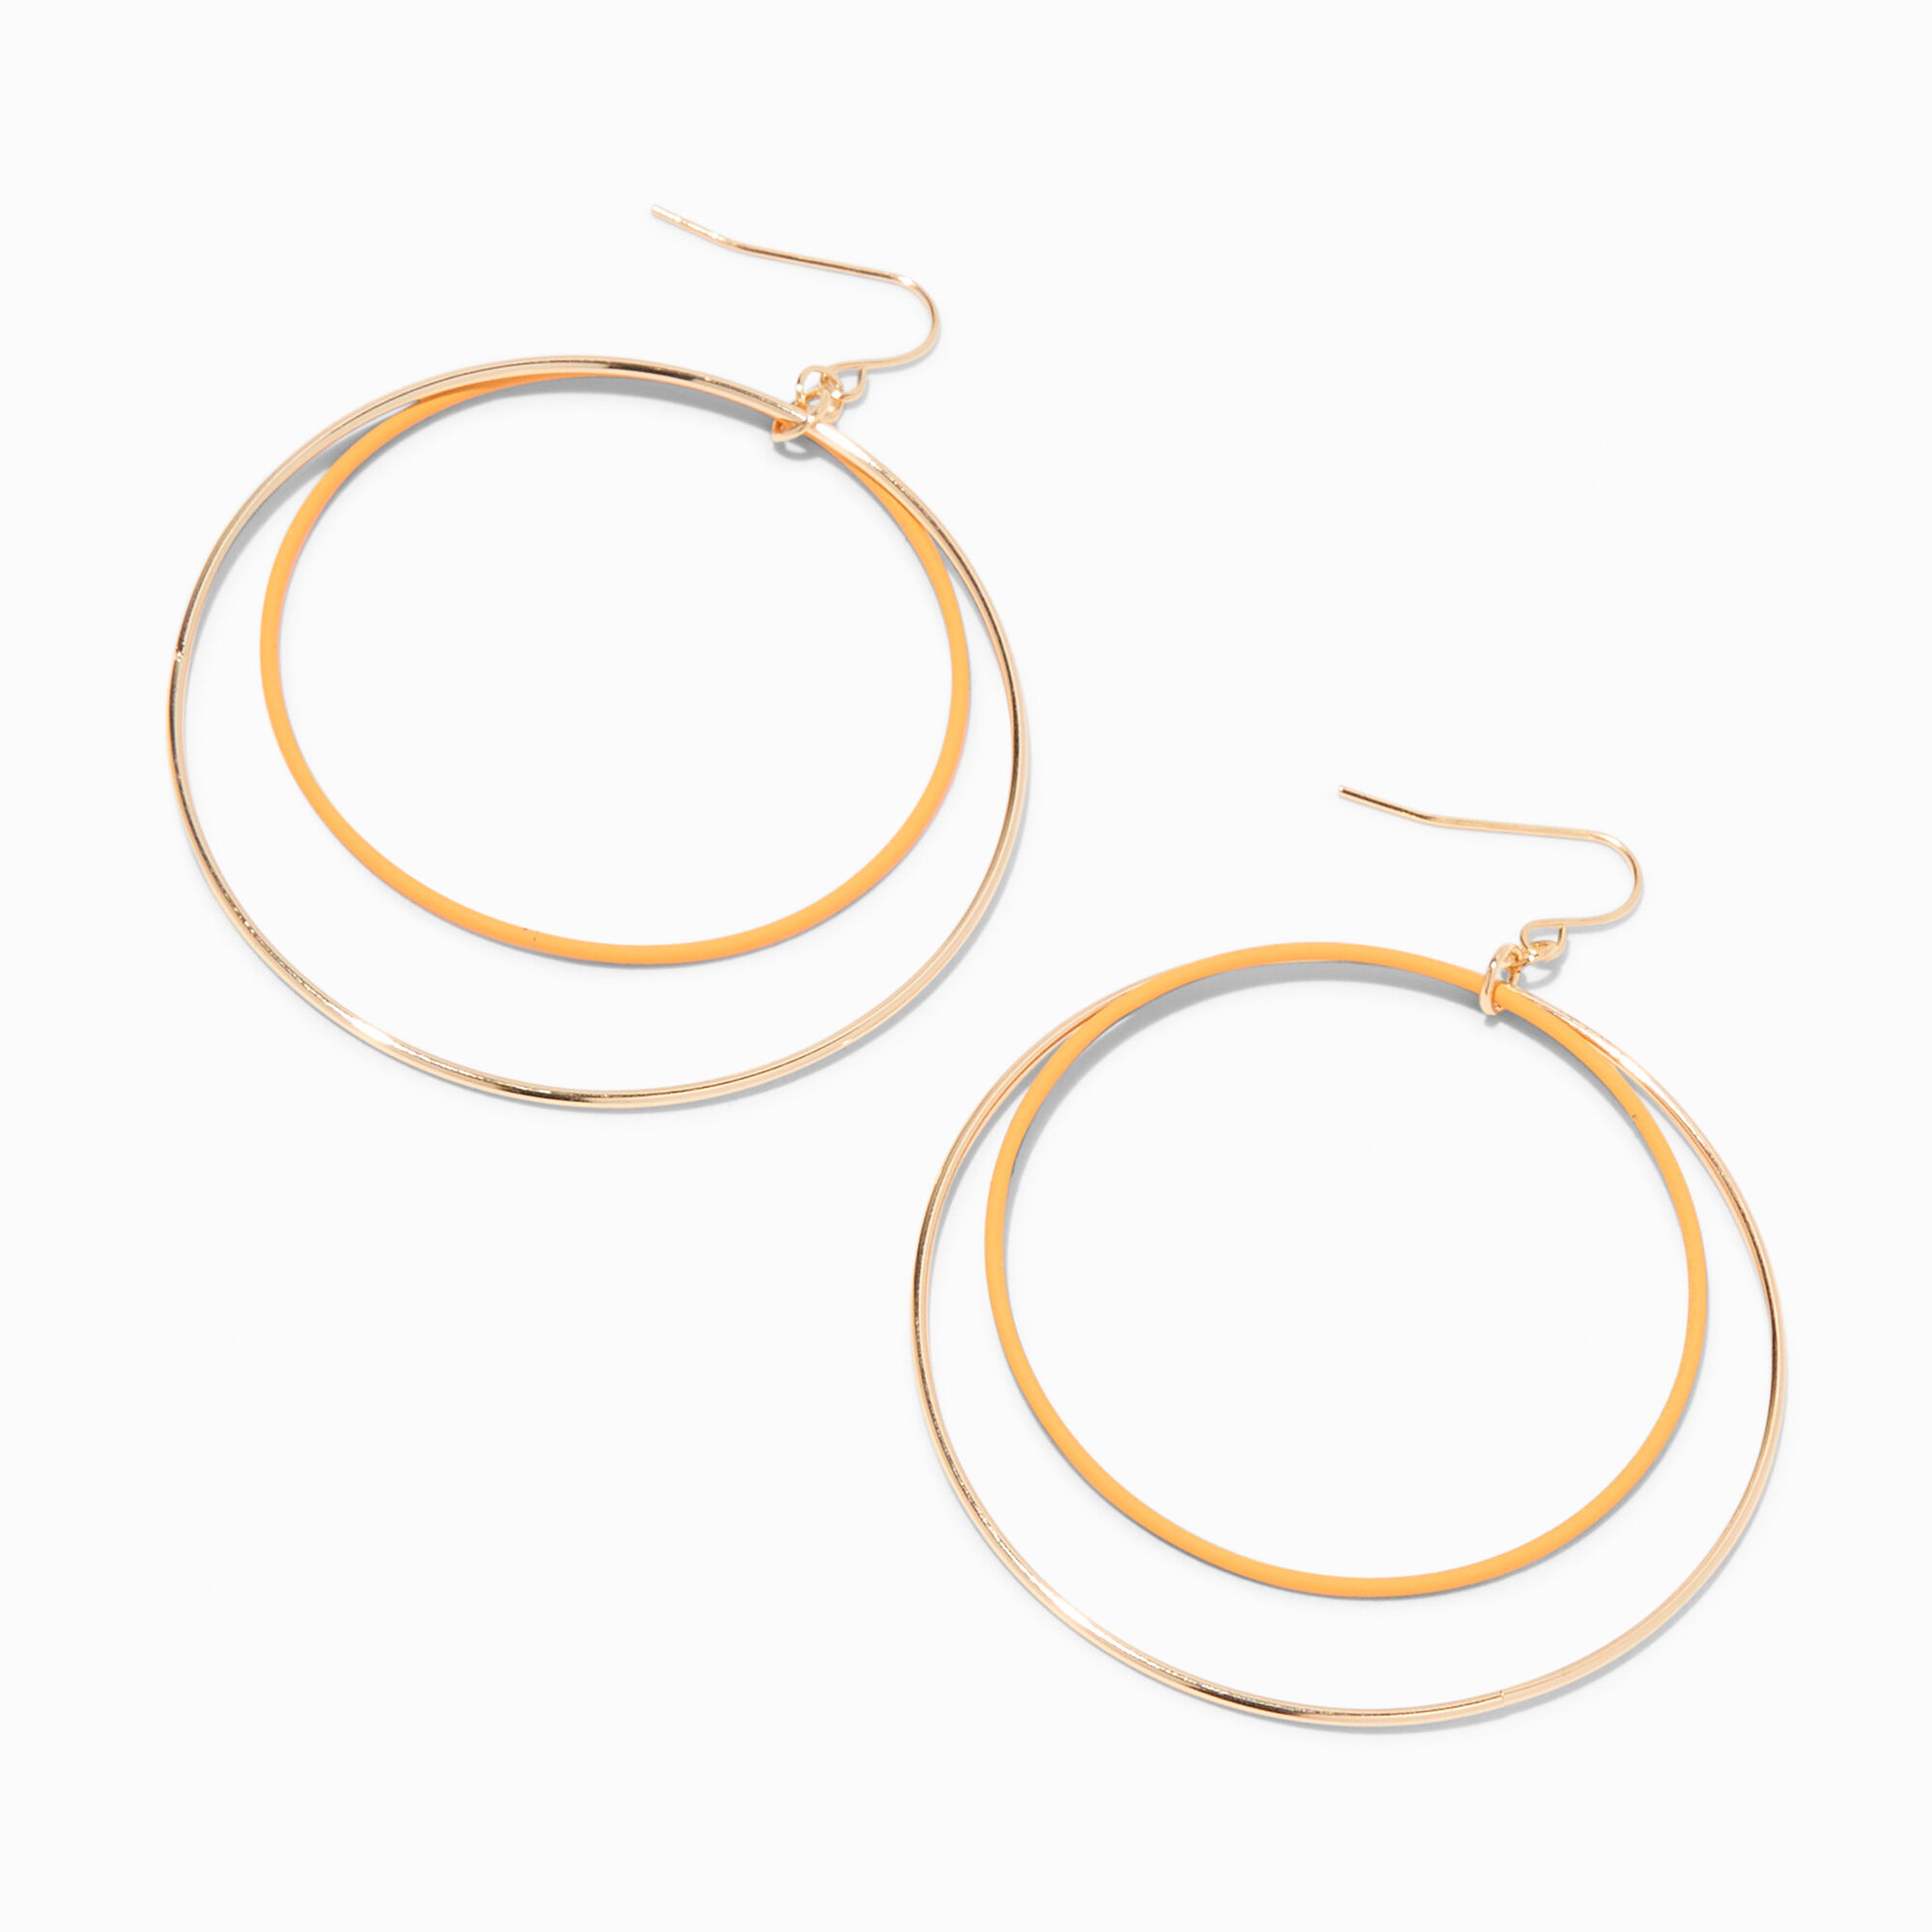 View Claires GoldTone 3 Enamel Double Ring Hoop Drop Earrings Orange information